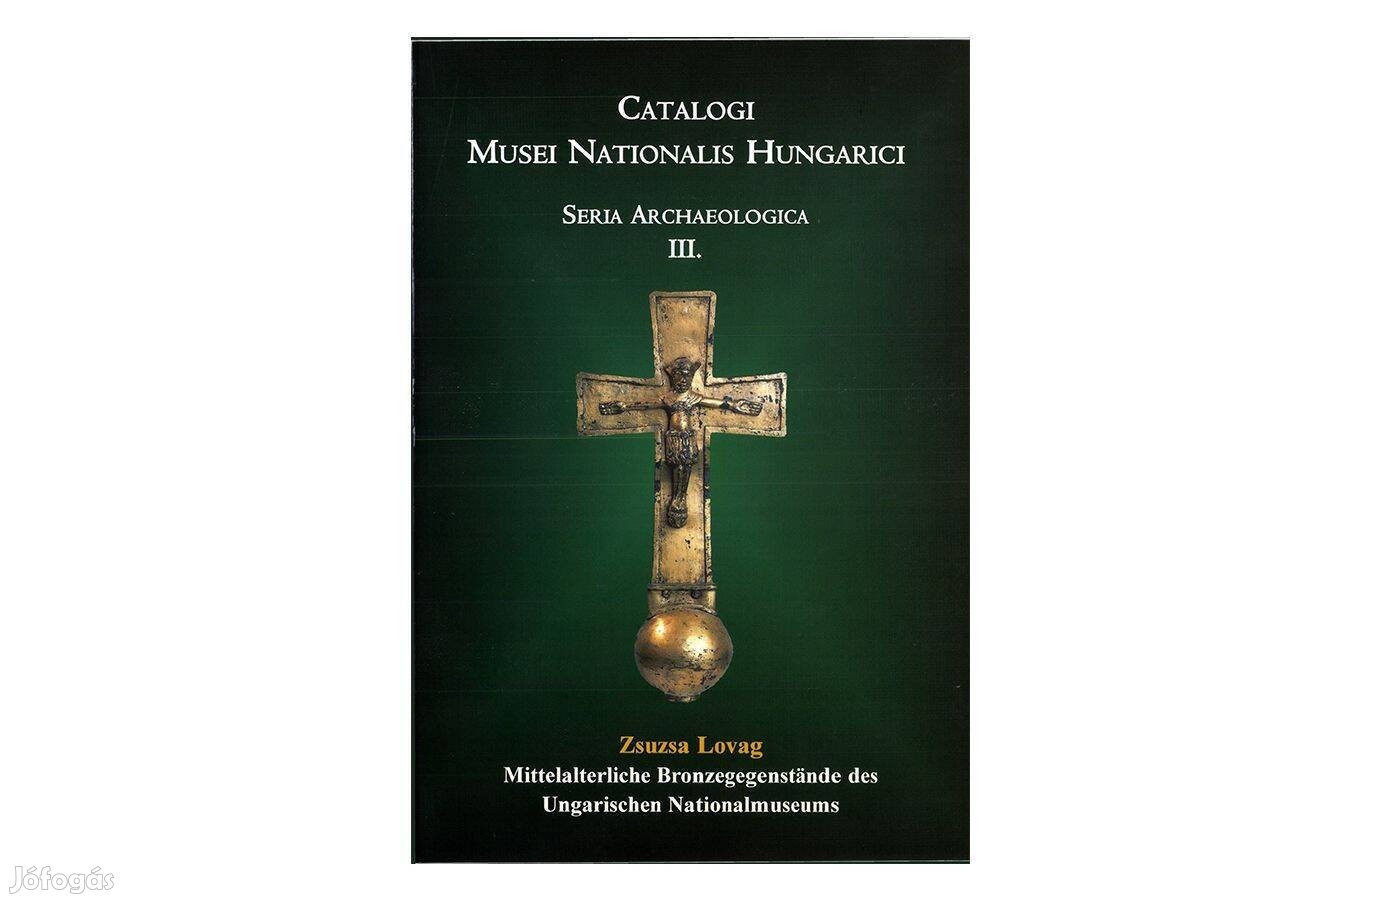 Mittelalterliche Bronzegegenstande des Ungarischen Nationalmuseums